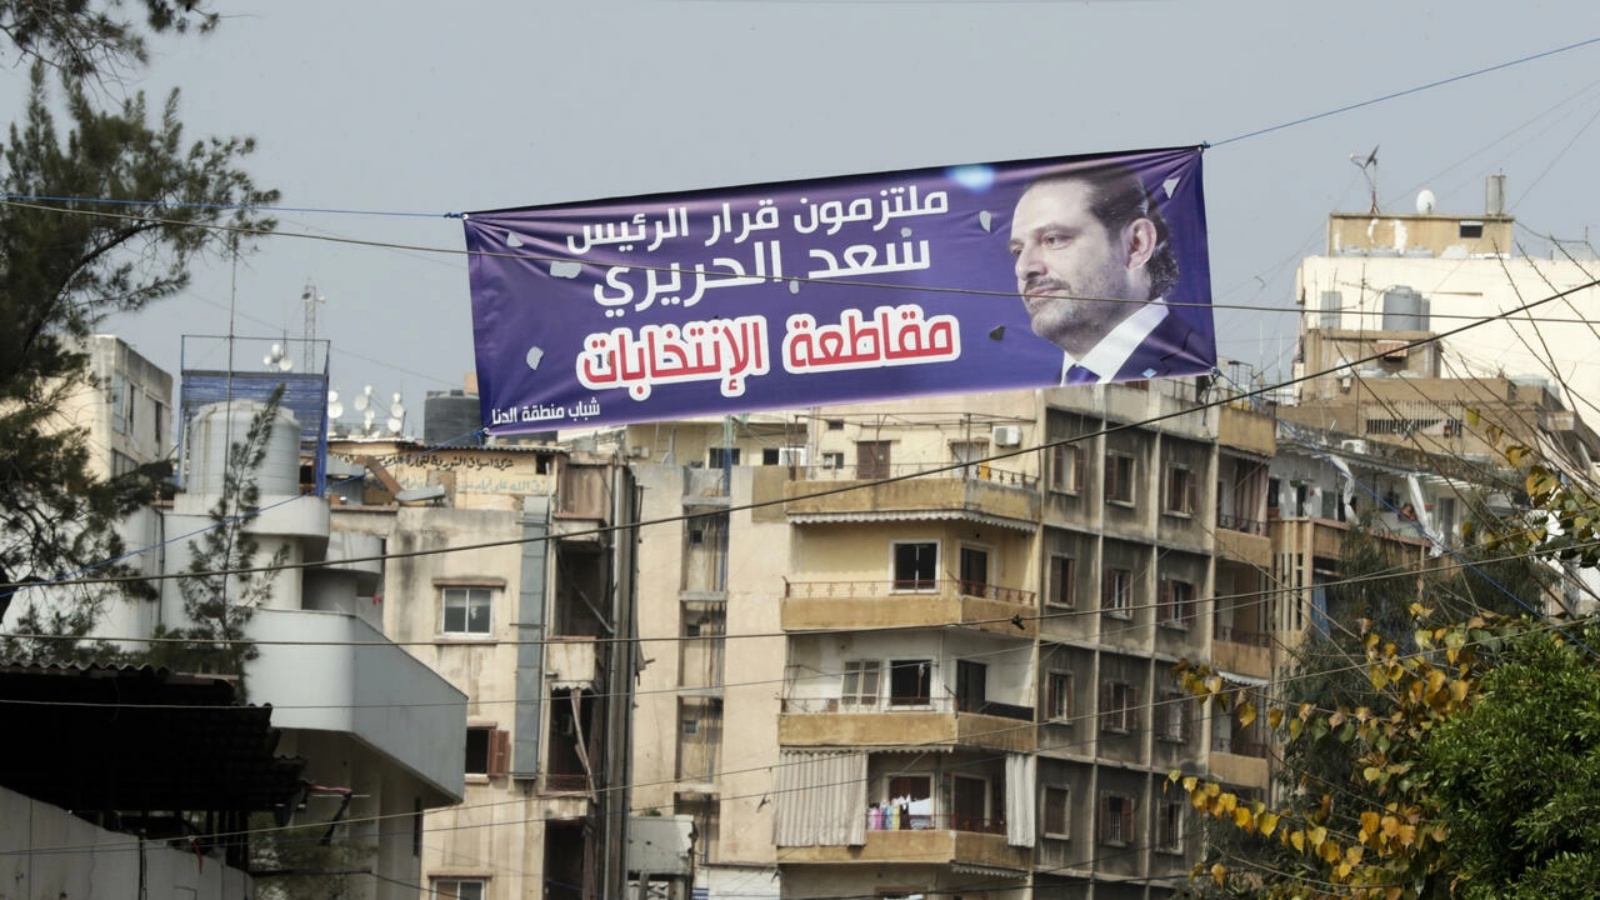 لافتة تؤكد الالتزام بقرار رئيس الحكومة اللبناني السابق سعد الحريري مقاطعة الانتخابات في أحد شوارع بييروت في 27 أبريل 2022